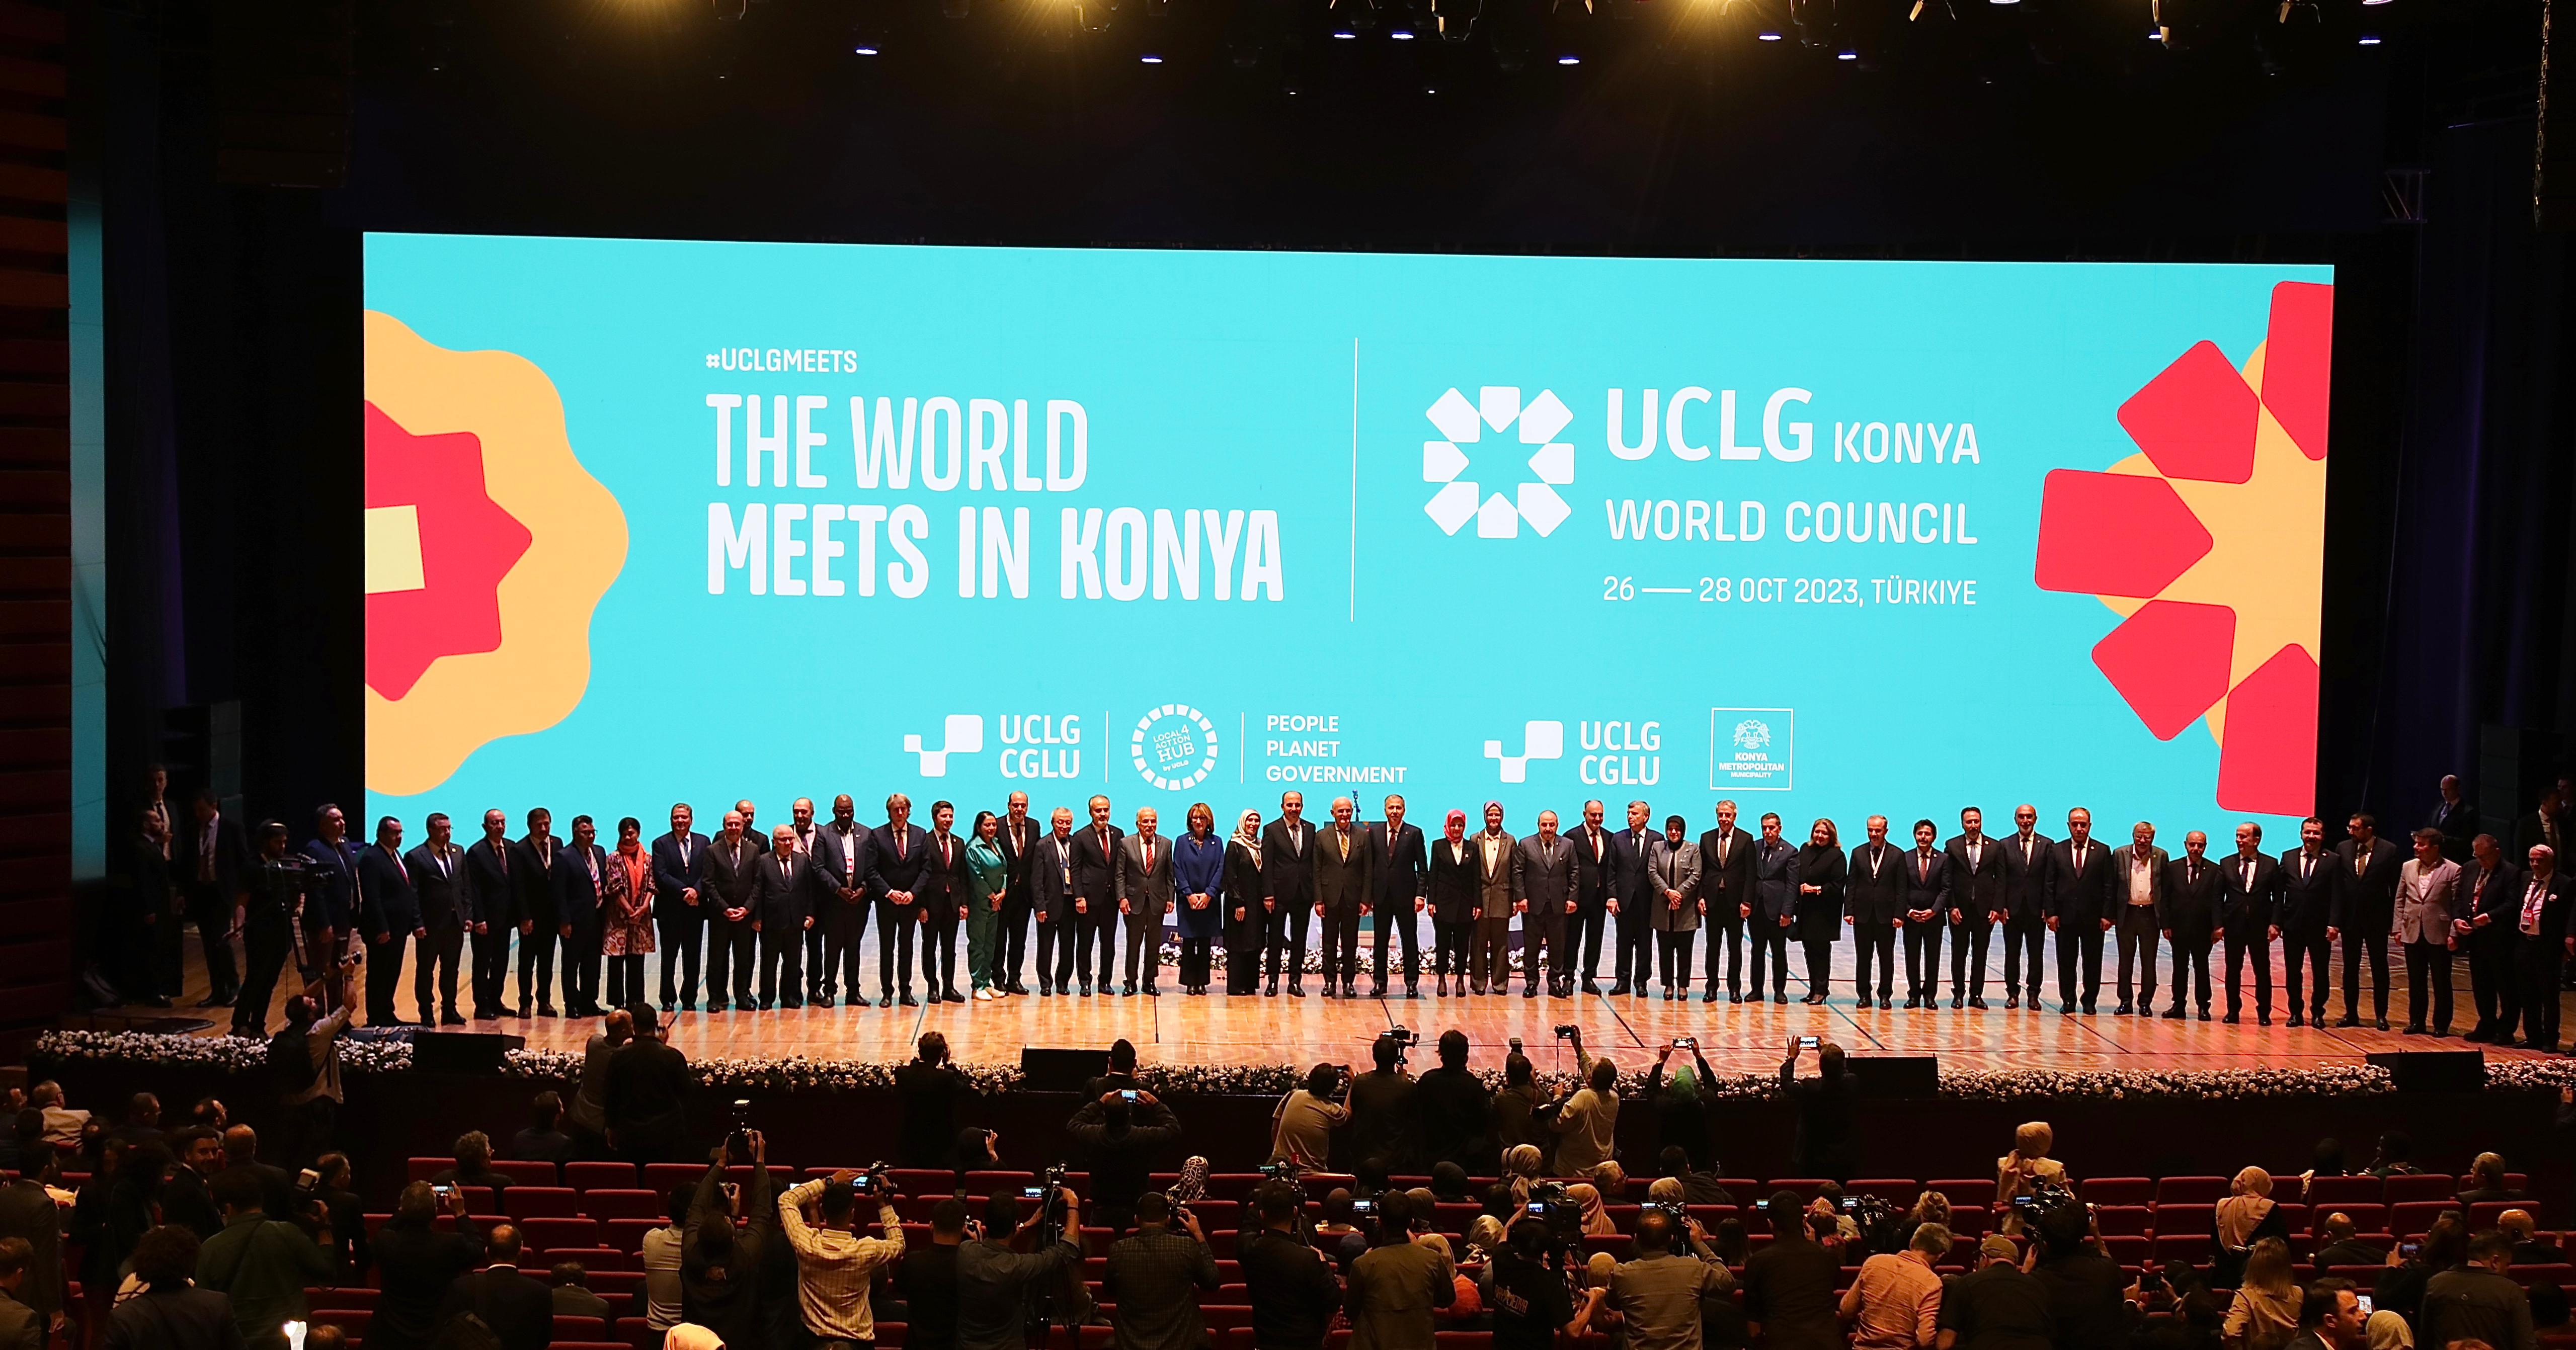 UCLG Dünya Konseyi Konya’da gerçekleştirildi